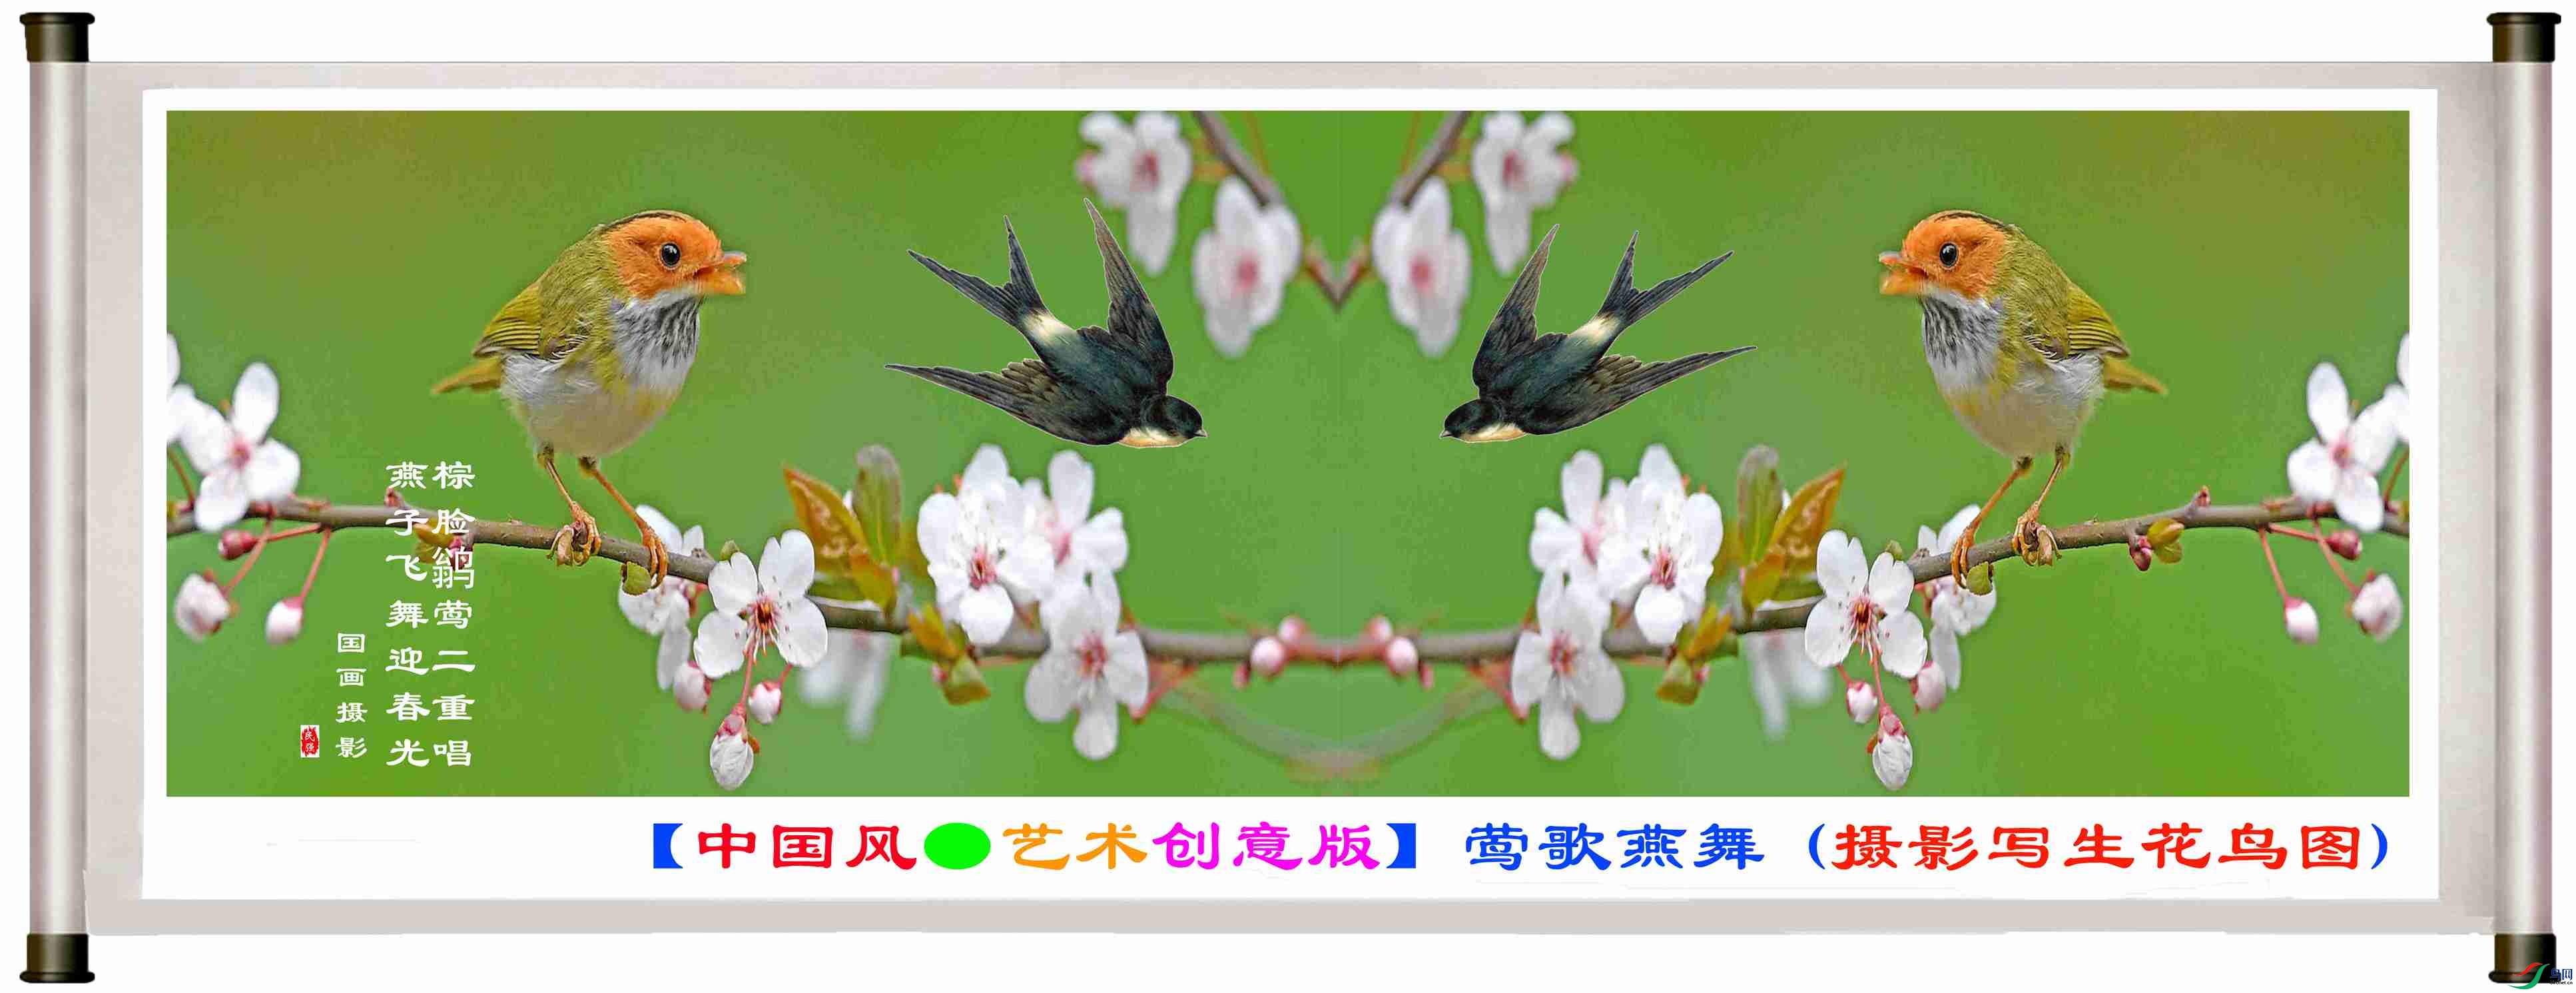 【中国风●艺术创意版】莺歌燕舞 (摄影写生花鸟图)